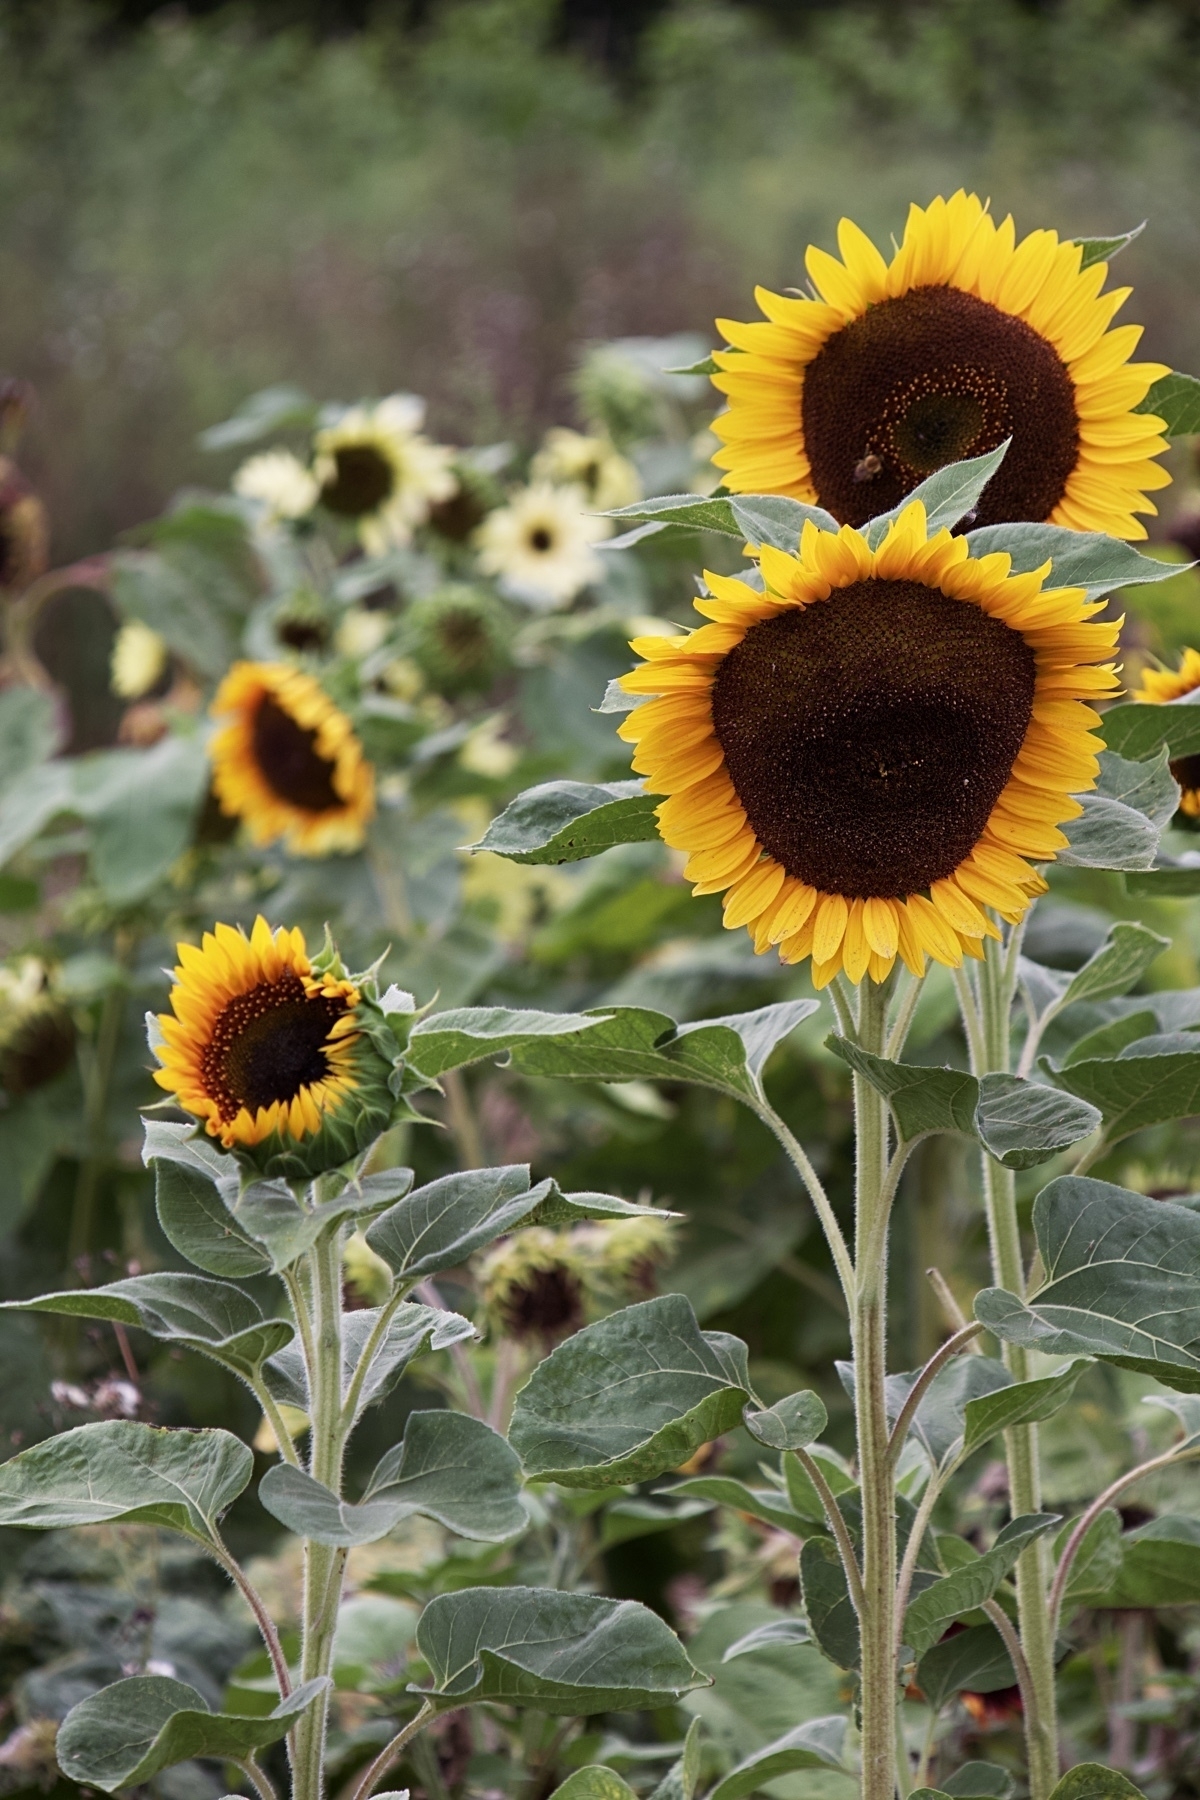 Sunflowers at Spring Gardens Nursery.